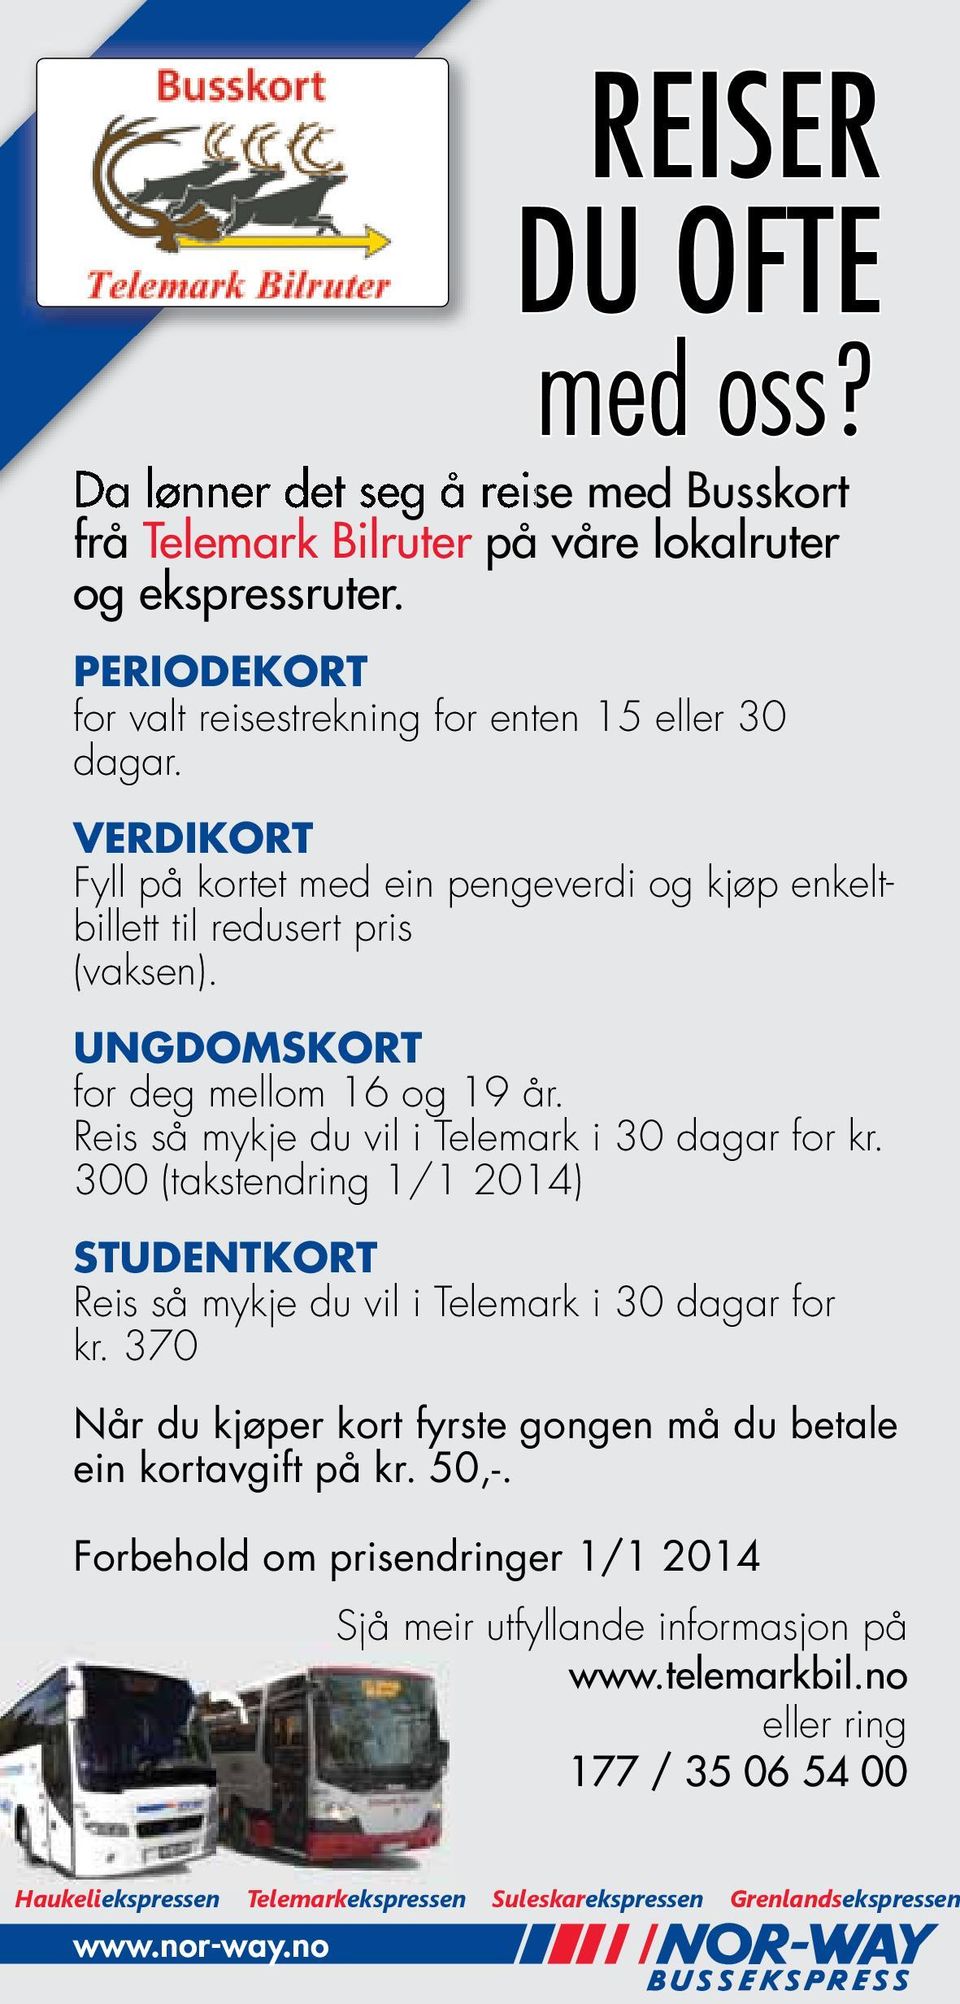 300 (takstendring 1/1 2014) STUDENTKORT Reis så mykje du vil i Telemark i 30 dagar for kr. 370 Når du kjøper kort fyrste gongen må du betale ein kortavgift på kr. 50,-.